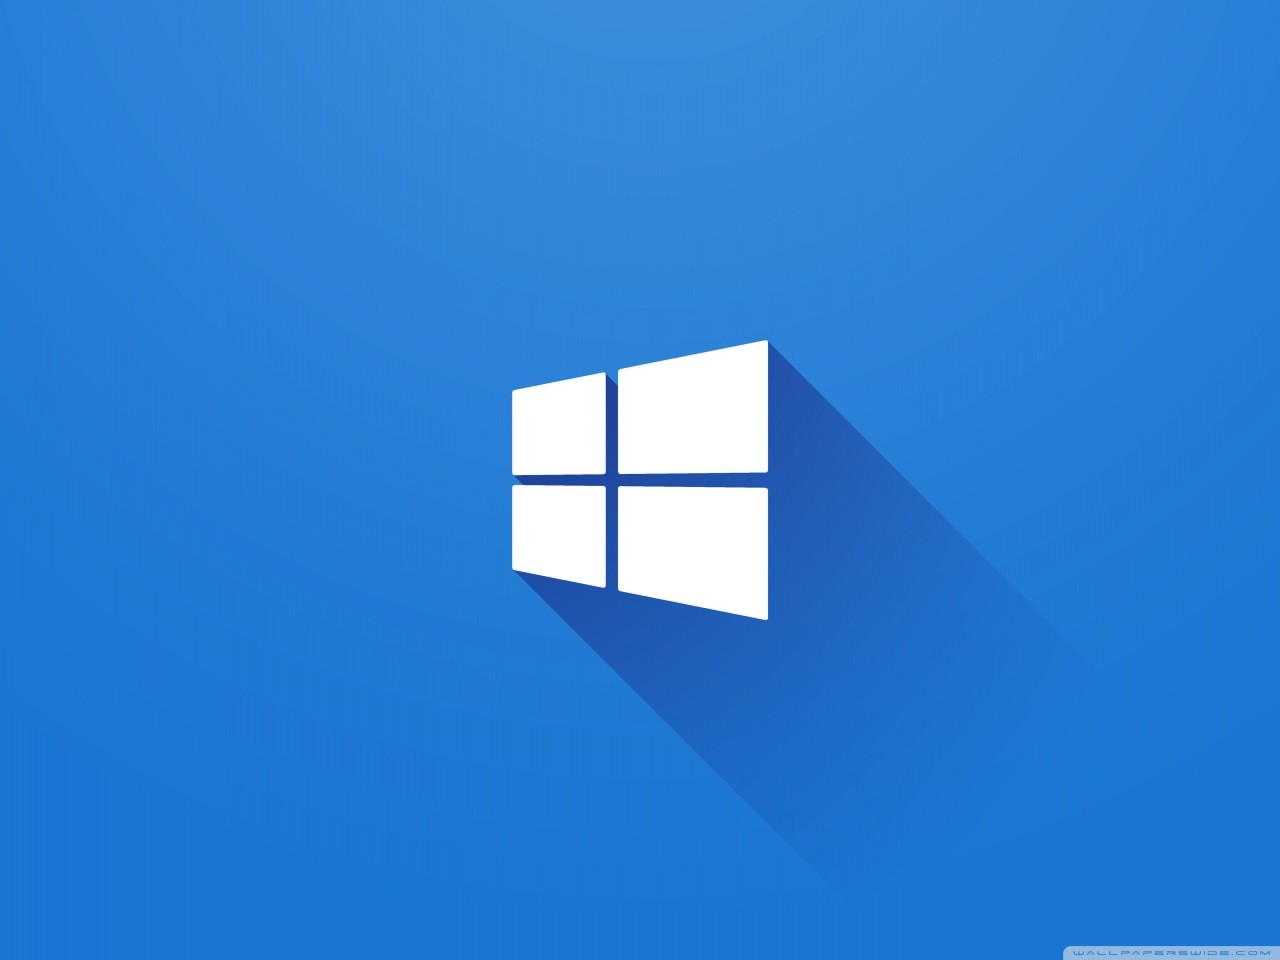 Windows 10 Pro improvvisamente disattivato? Bug in risoluzione 